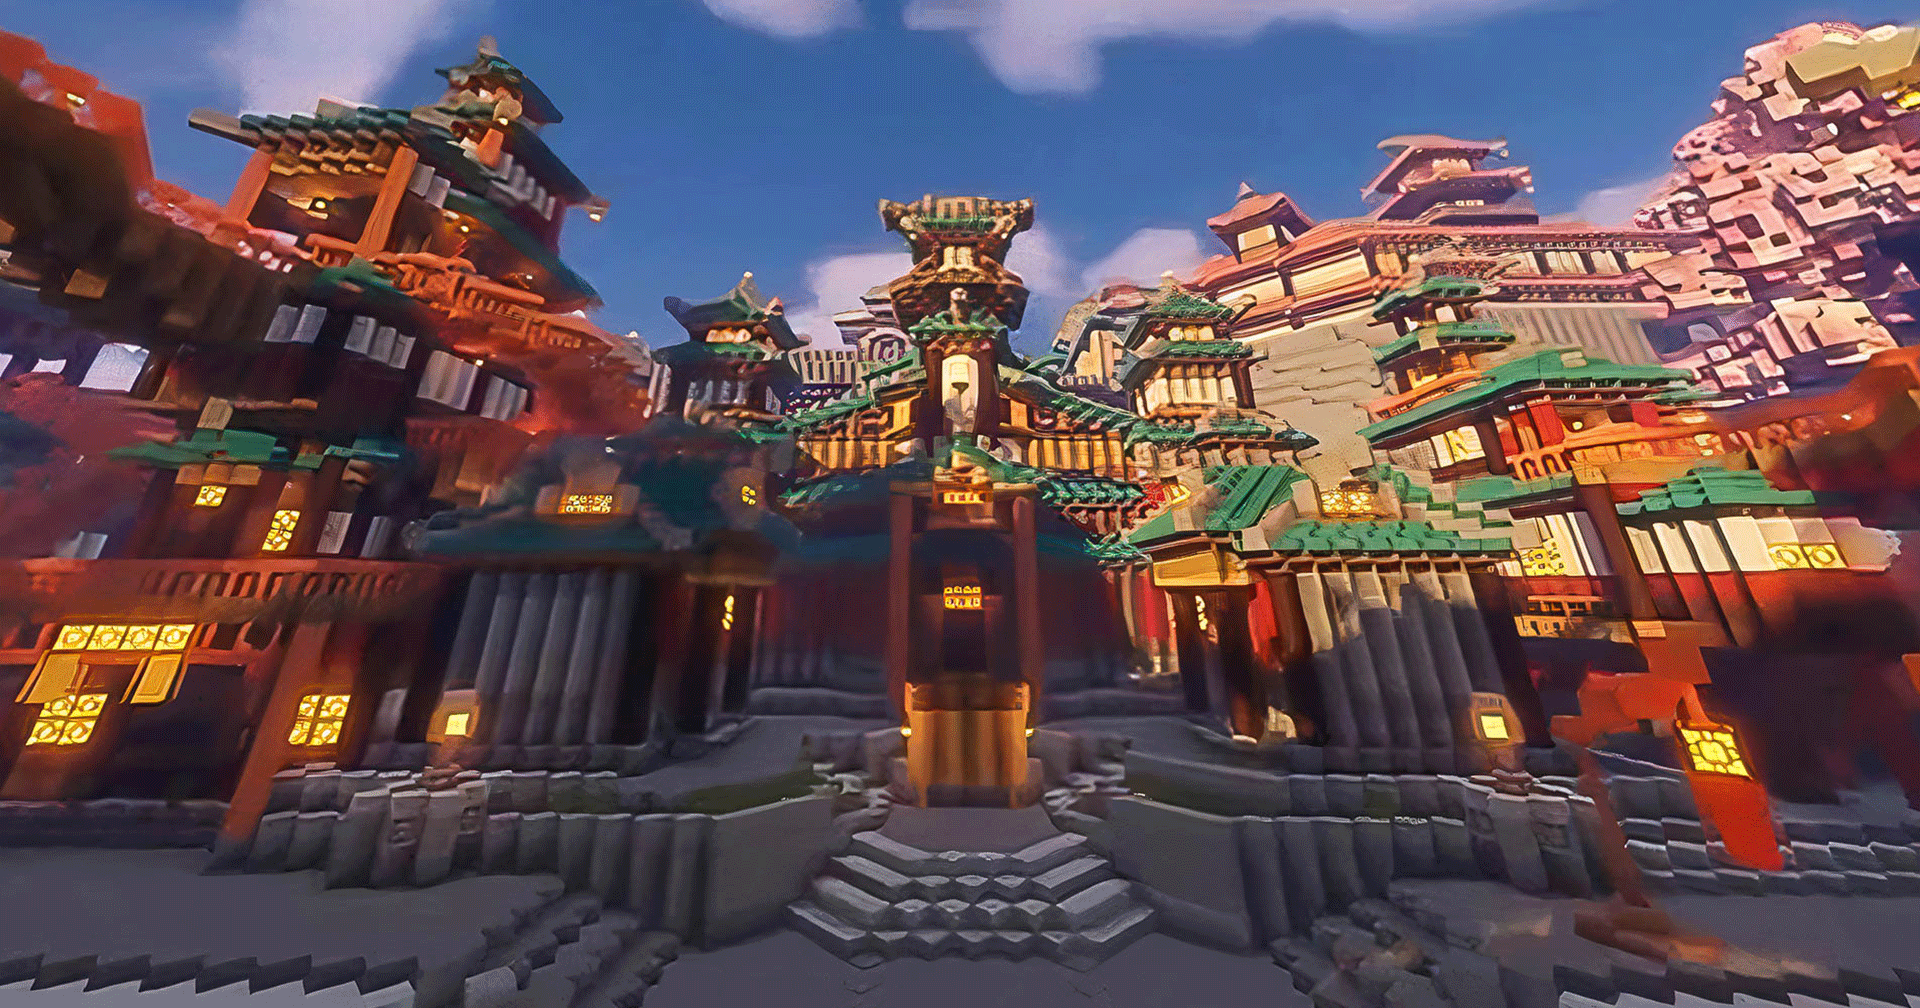 ผู้เล่น Minecraft ใช้เวลามากกว่า 300 ชม. เพื่อสร้างเมือง Liyue จาก Genshin Impact